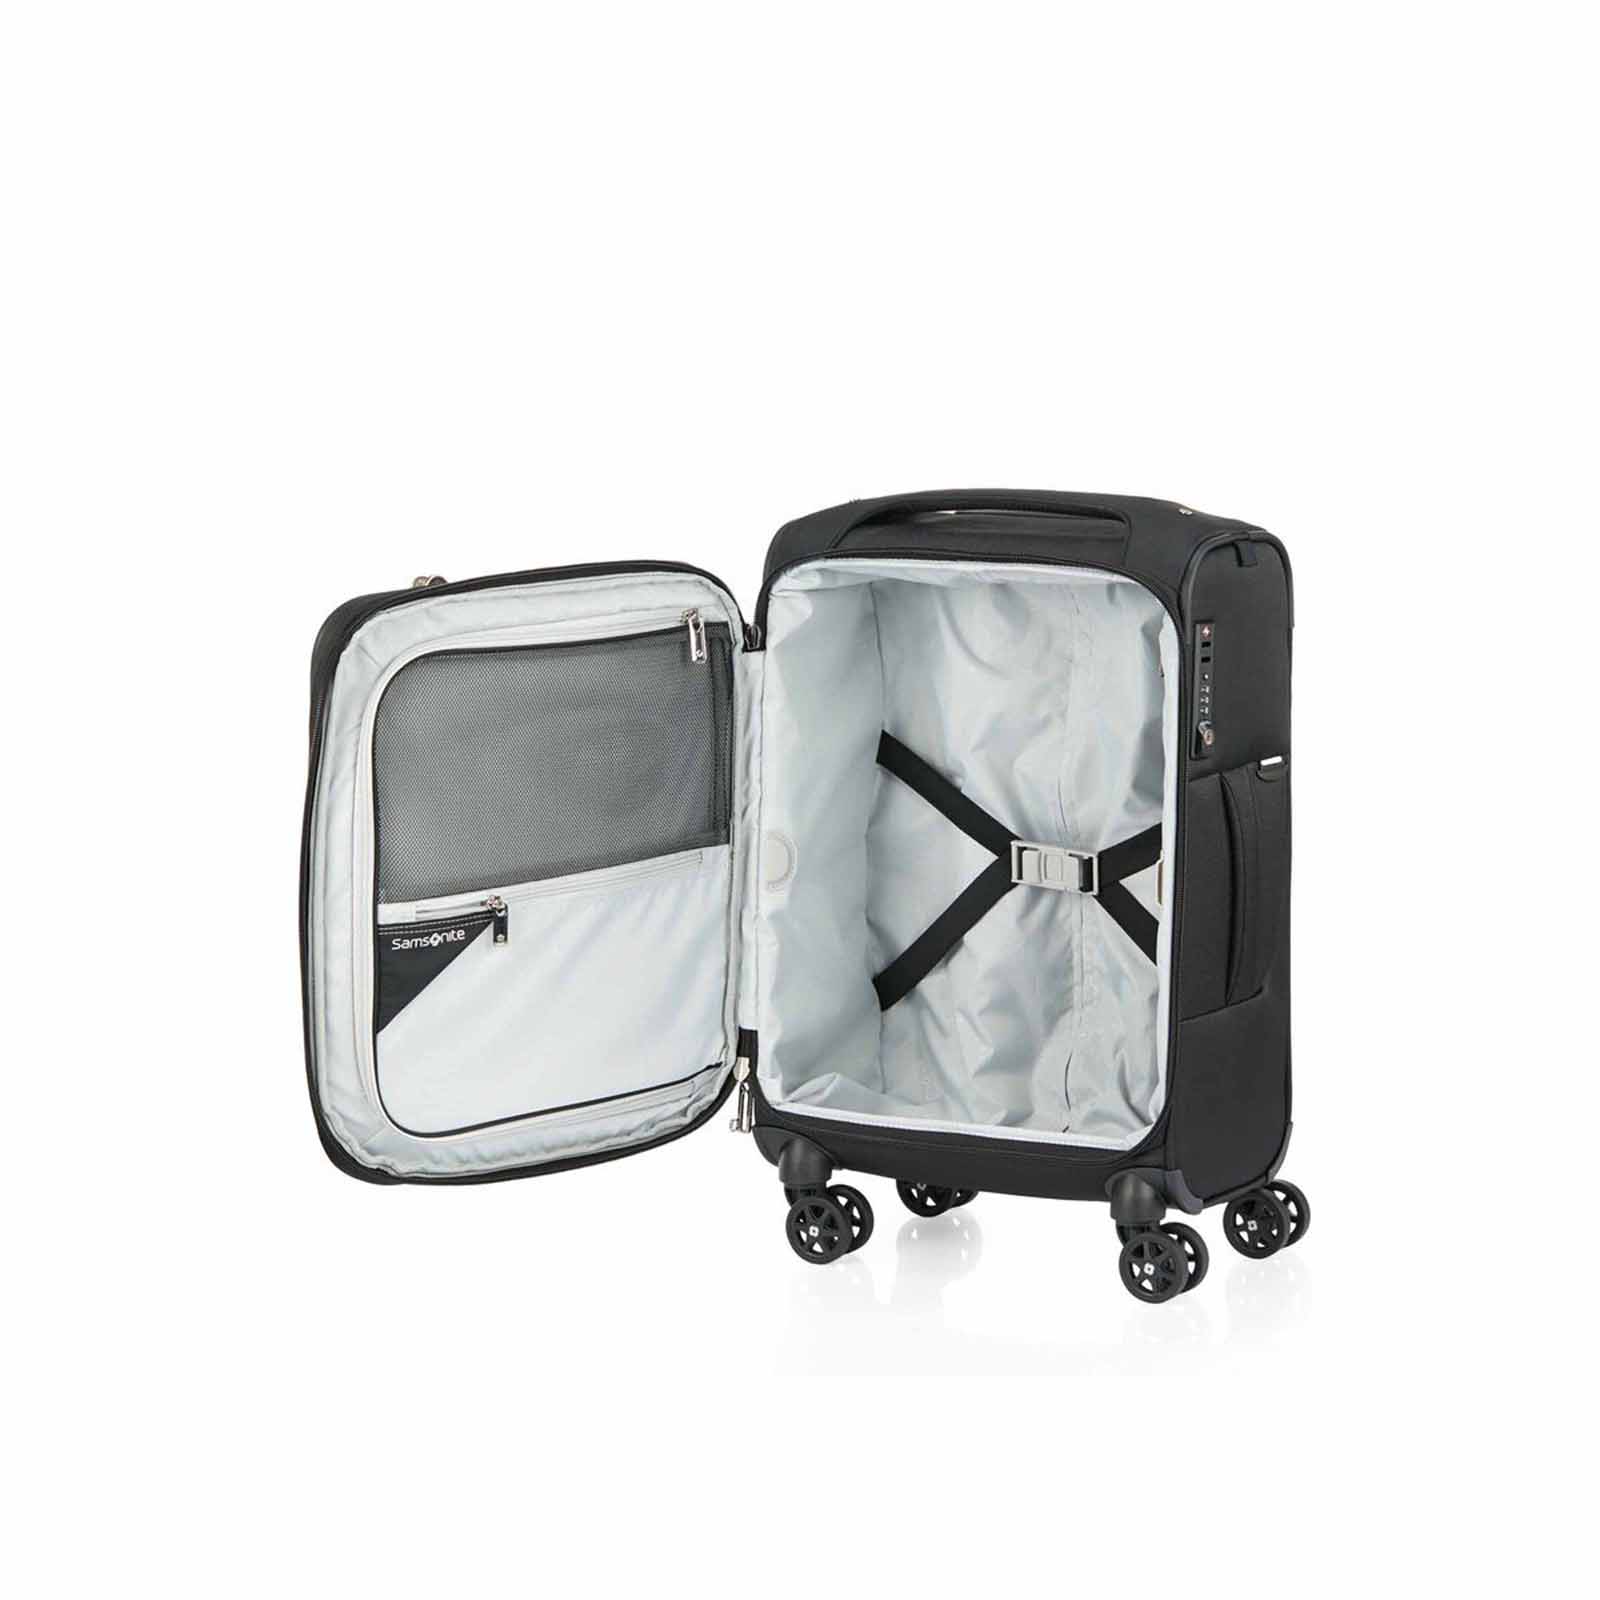 Samsonite-B-Lite-5-55cm-Suitcase-Black-Open